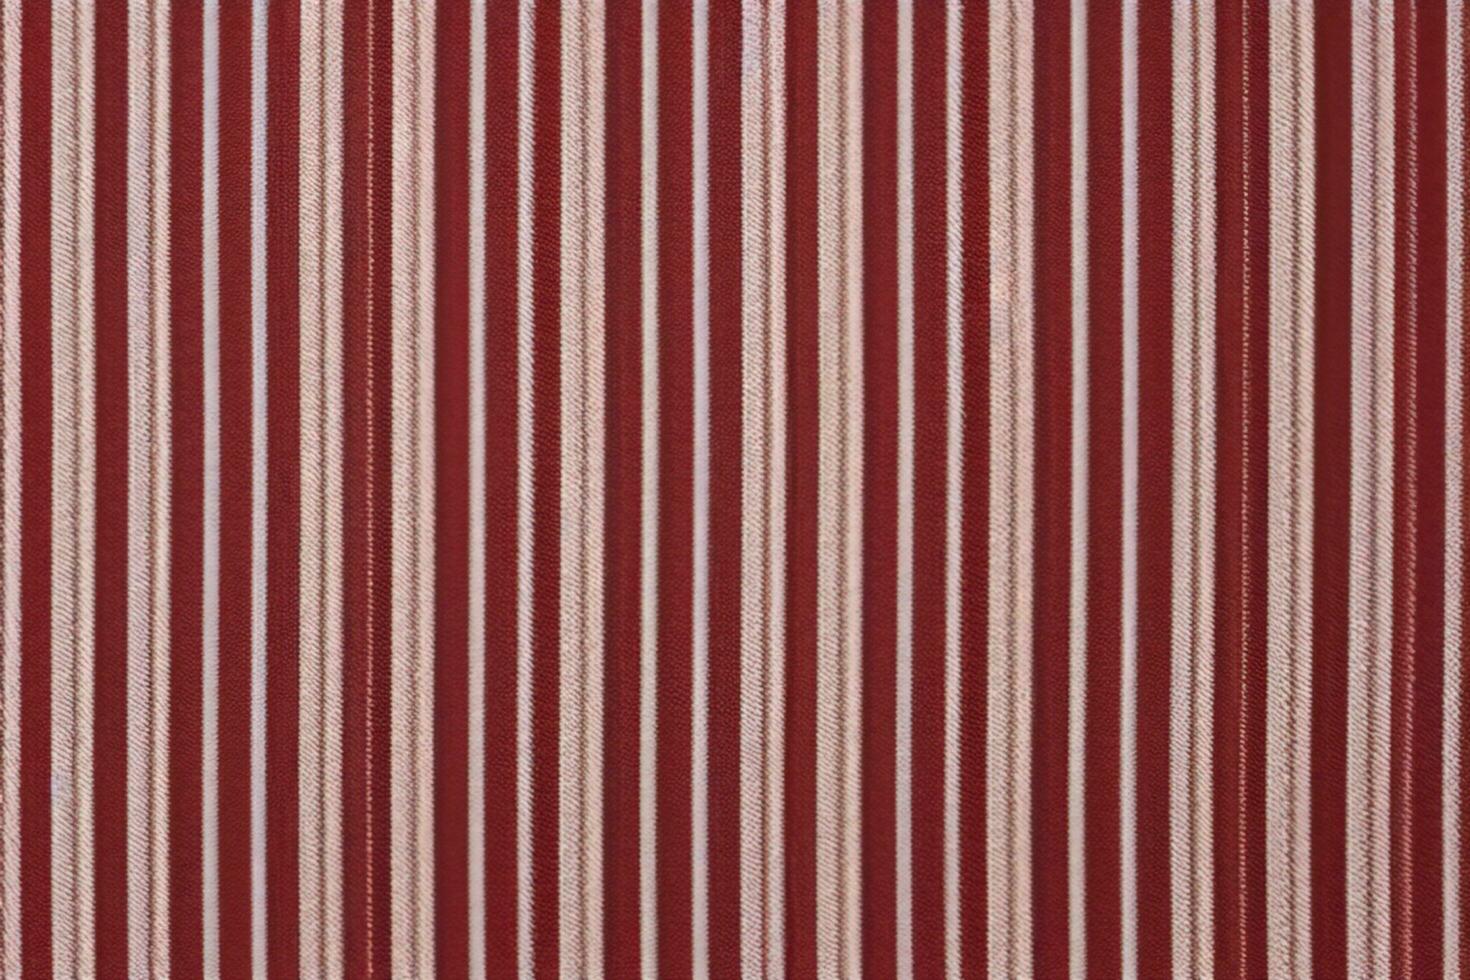 textil- bakgrund med röd och vit Ränder foto